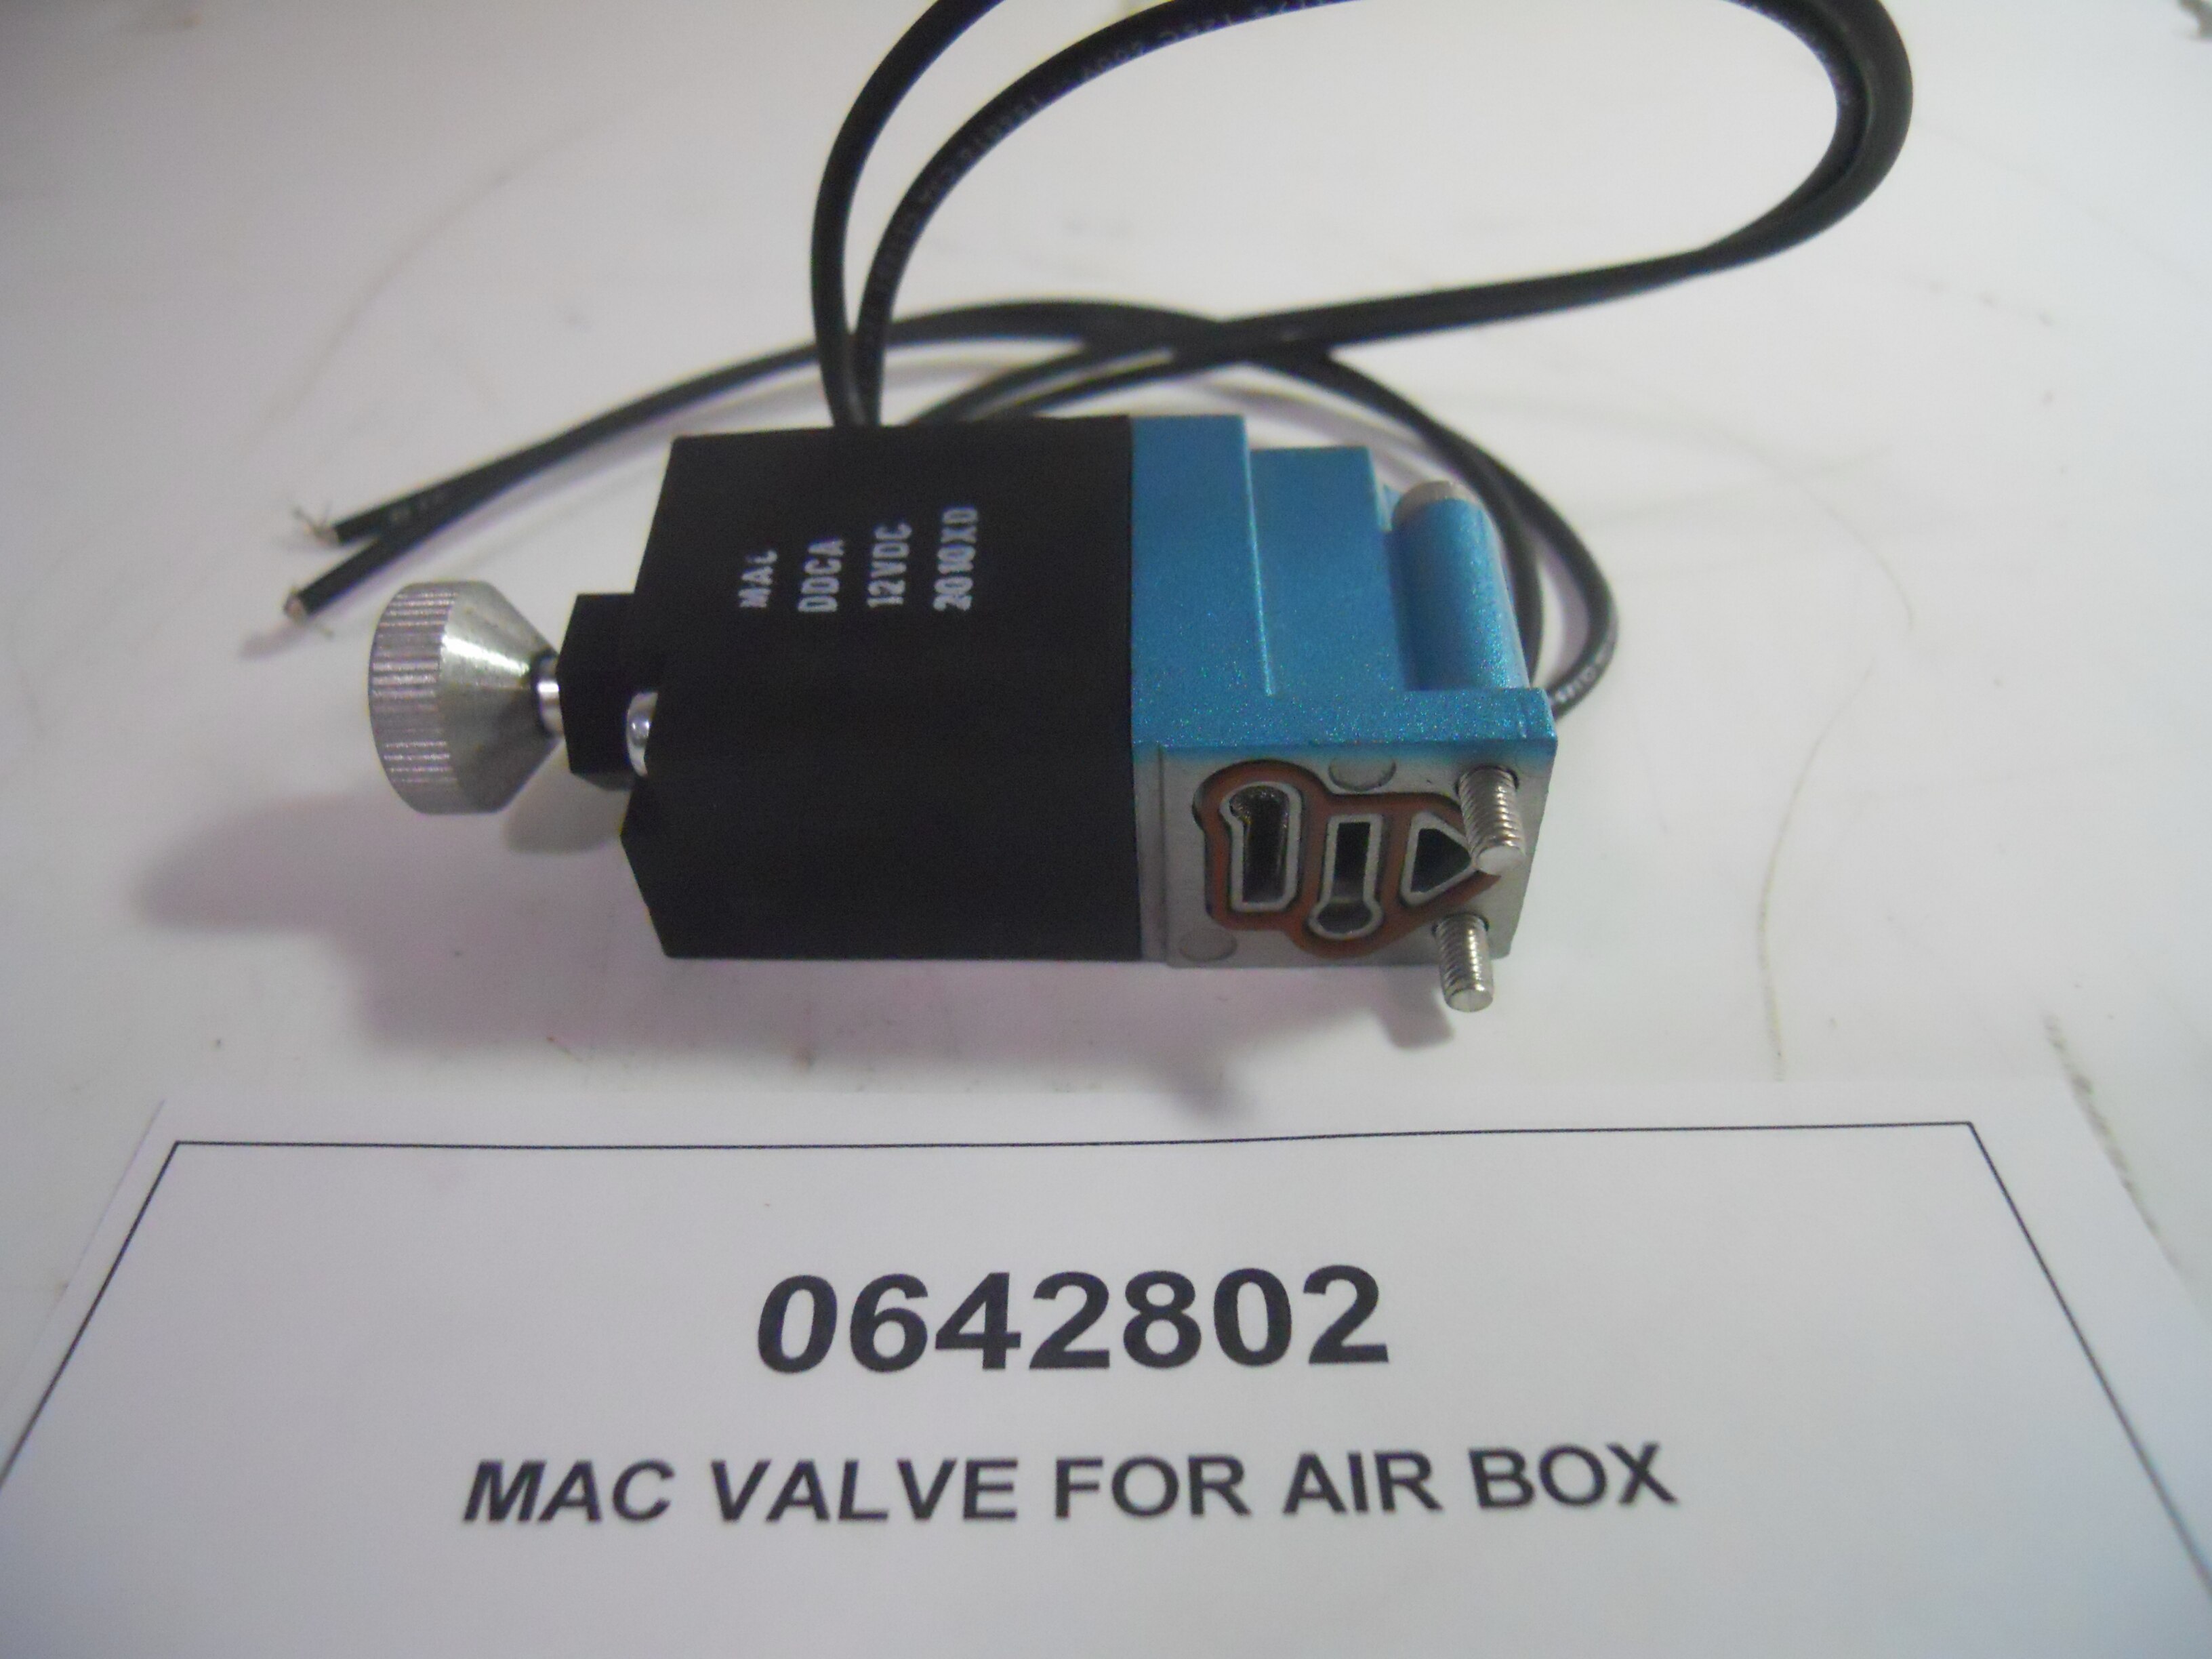 MAC VALVE FOR AIR BOX